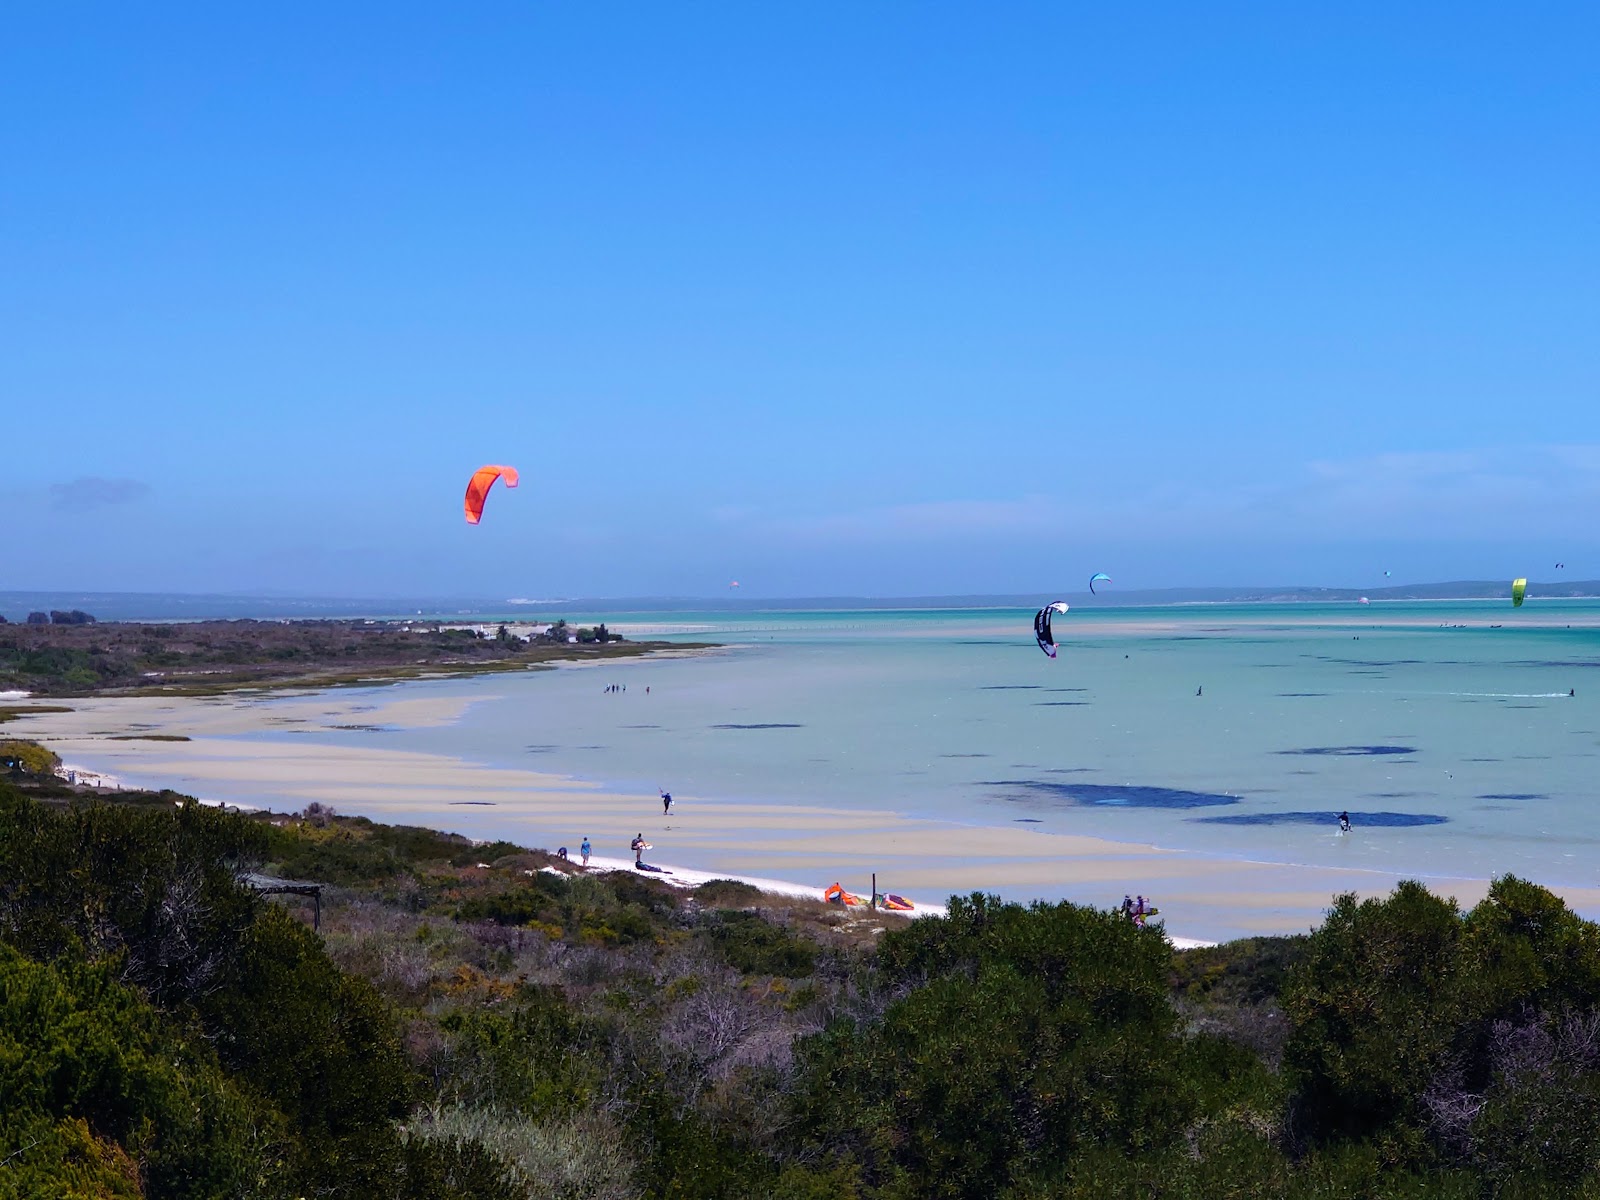 Shark Bay beach'in fotoğrafı - rahatlamayı sevenler arasında popüler bir yer